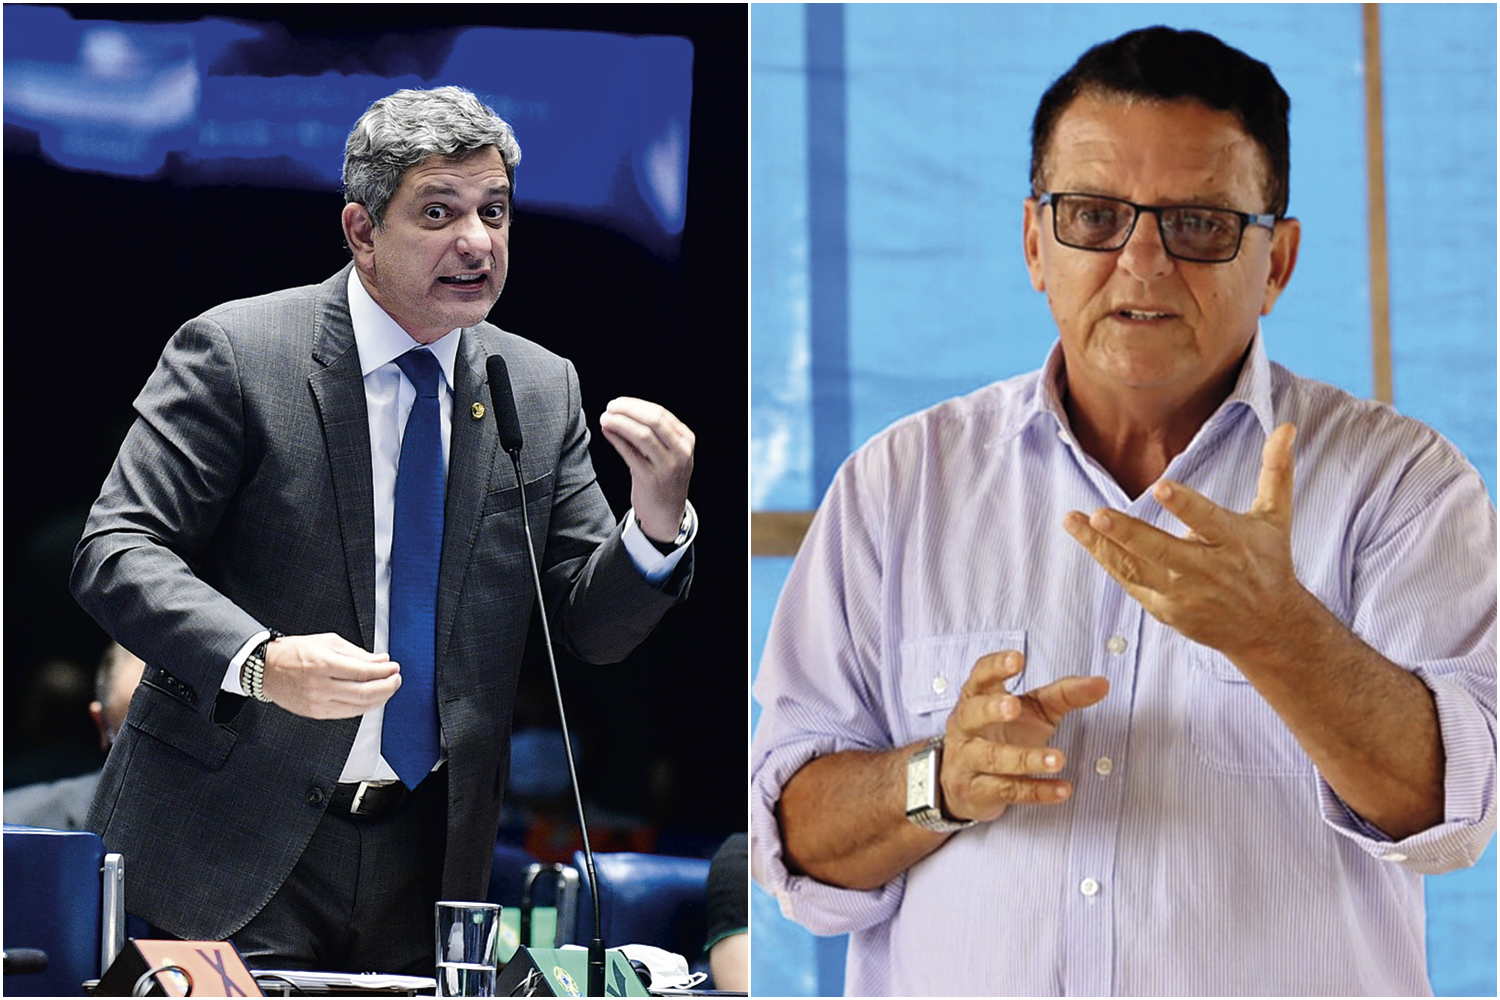 MEU TERRITÓRIO - O senador Carvalho (à esq.) e Macedo: “O partido vai apoiar a reeleição do atual prefeito”